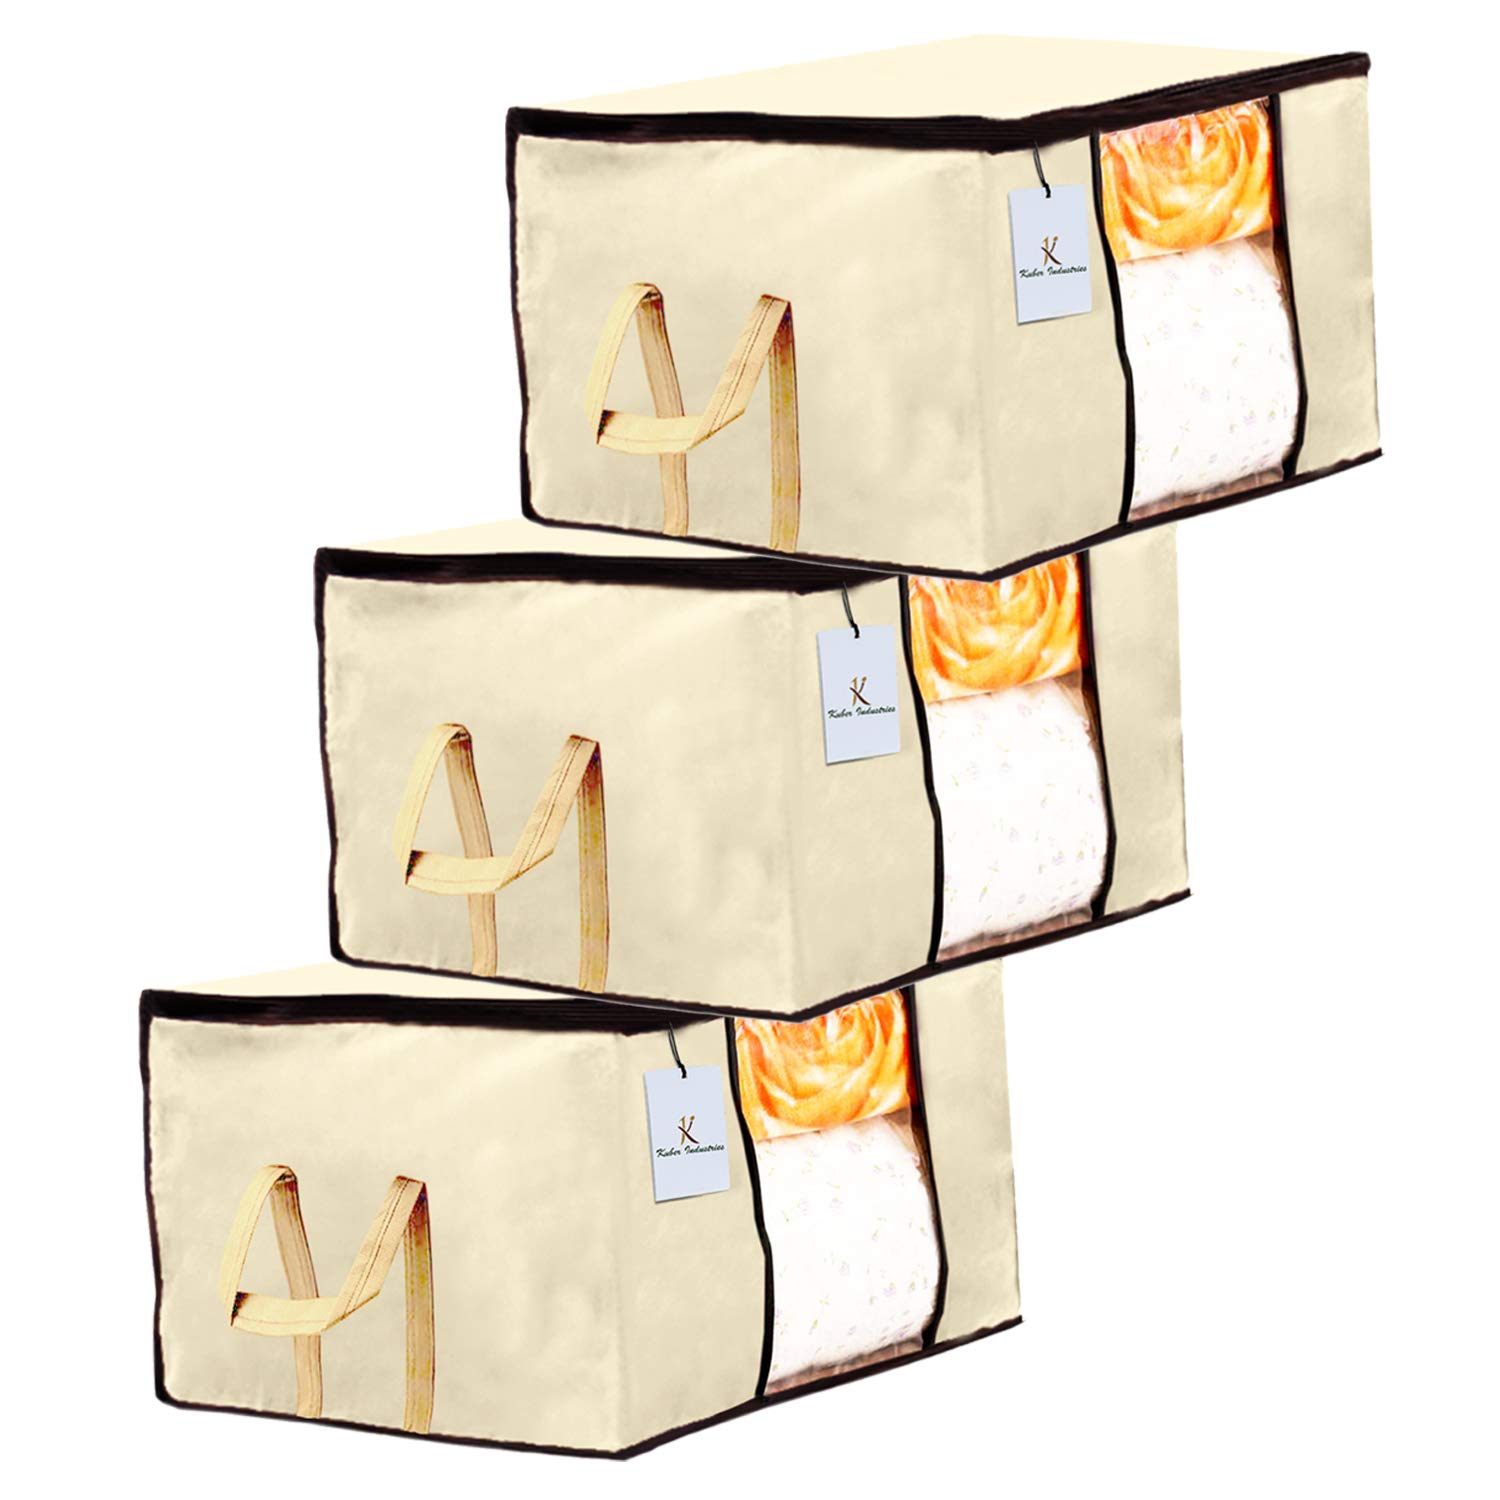 Kuber Industries Underbed Rectangular Blanket Storage|Organizer Bag|Blanket Cover |Storage Bag for Clothes Large|Set of 3 (Ivory)